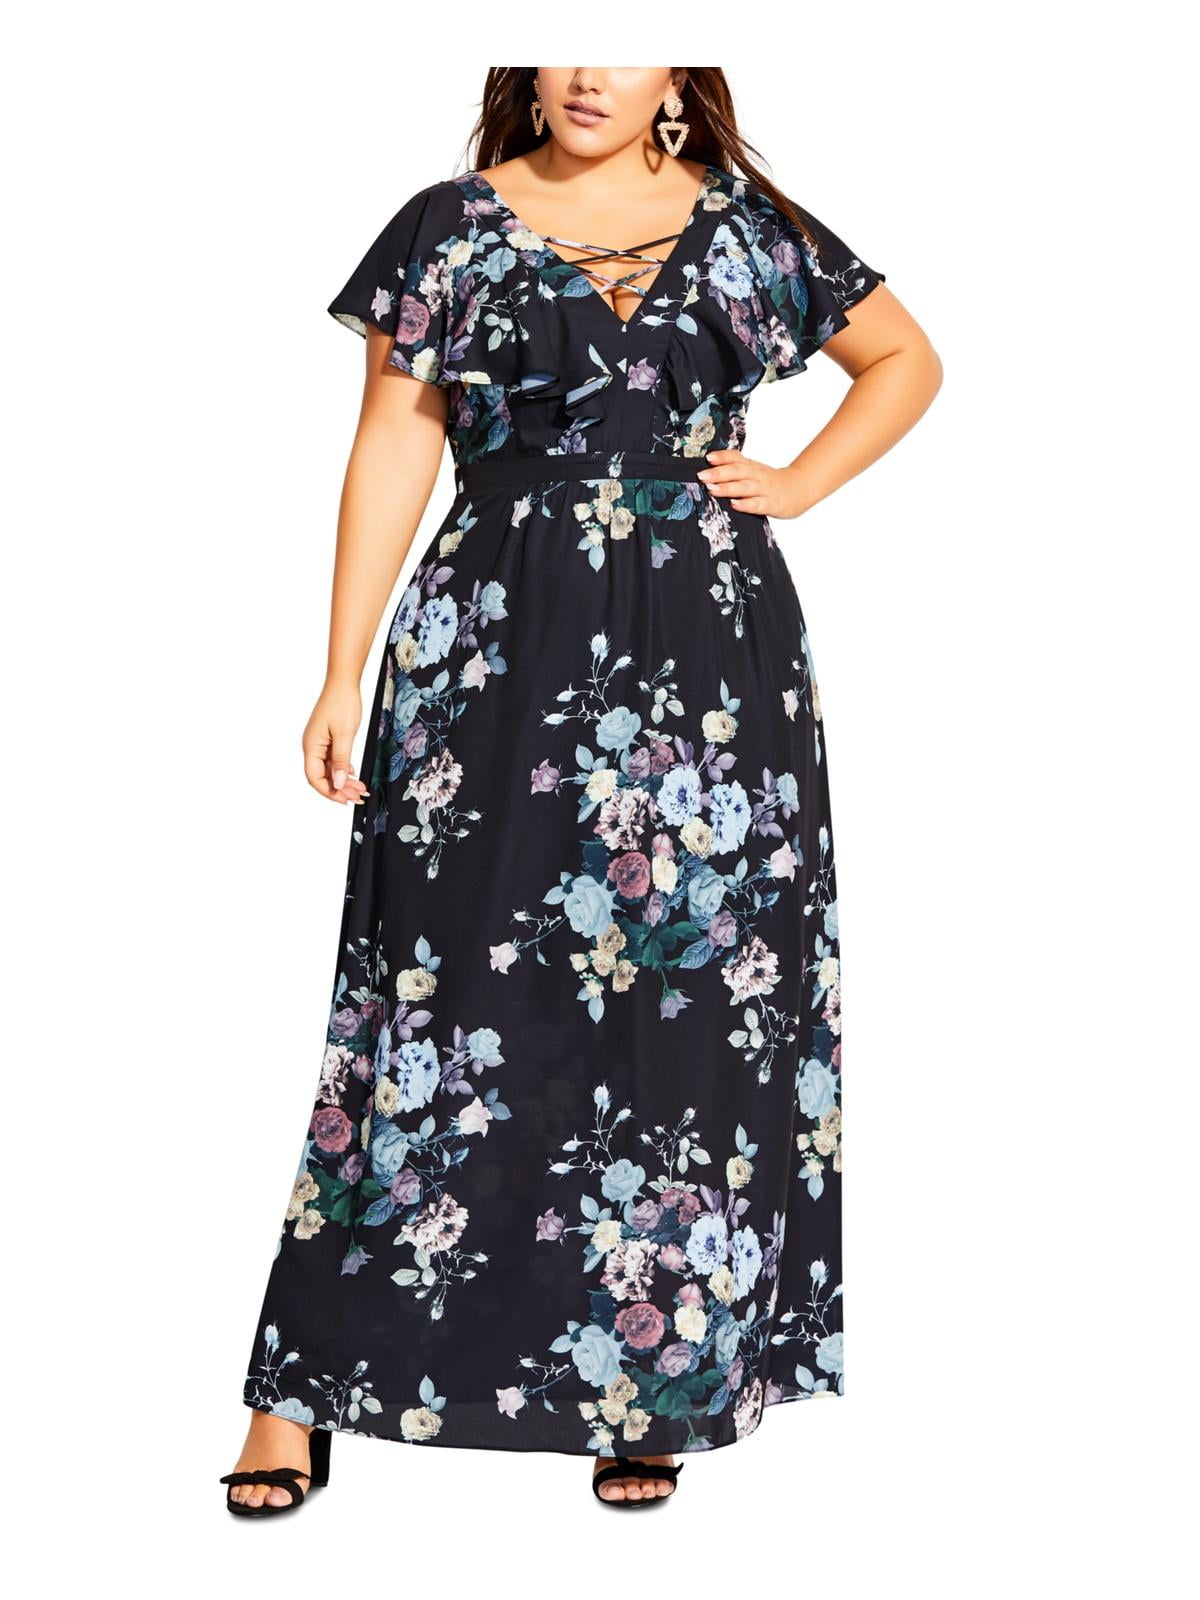 City Chic Women's Floral Print Lace up Maxi Dress Black Size Petite ...